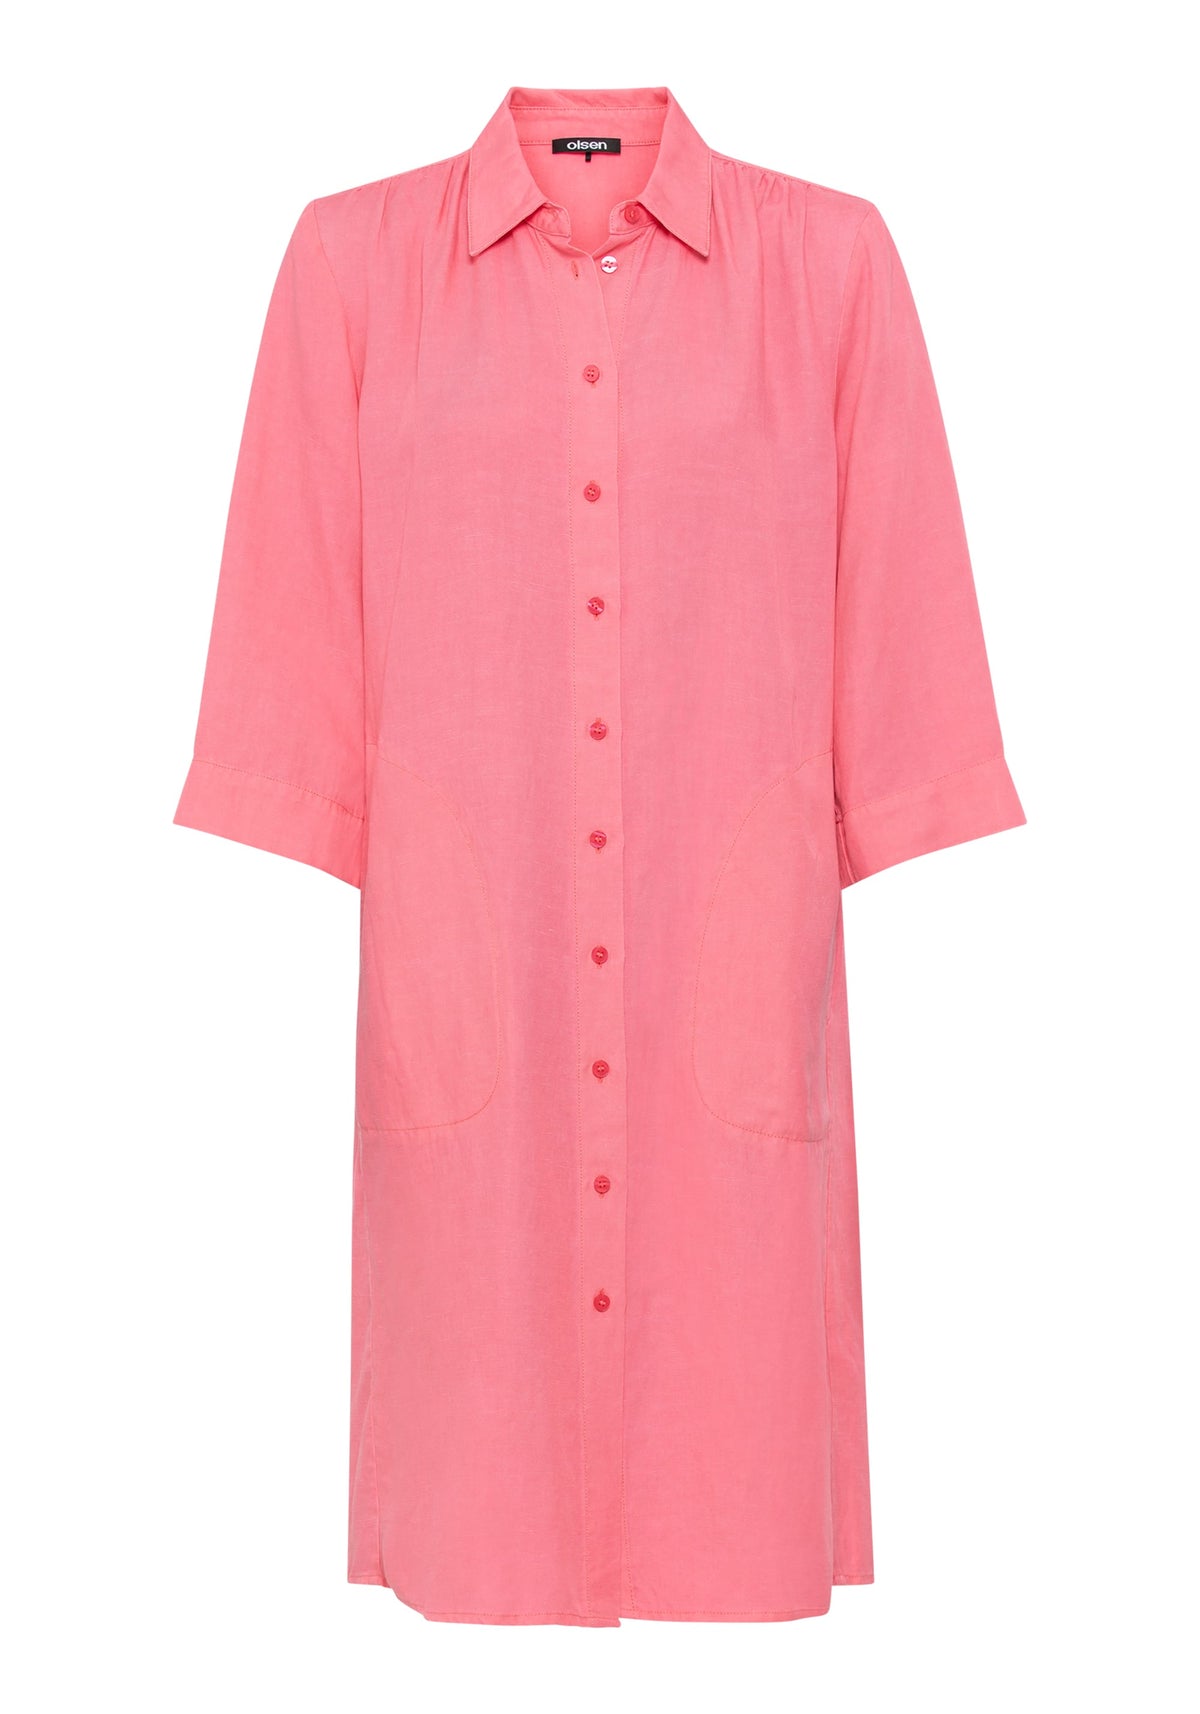 3/4 Sleeve Linen Blend Shirt Dress containing TENCEL™ Lyocell